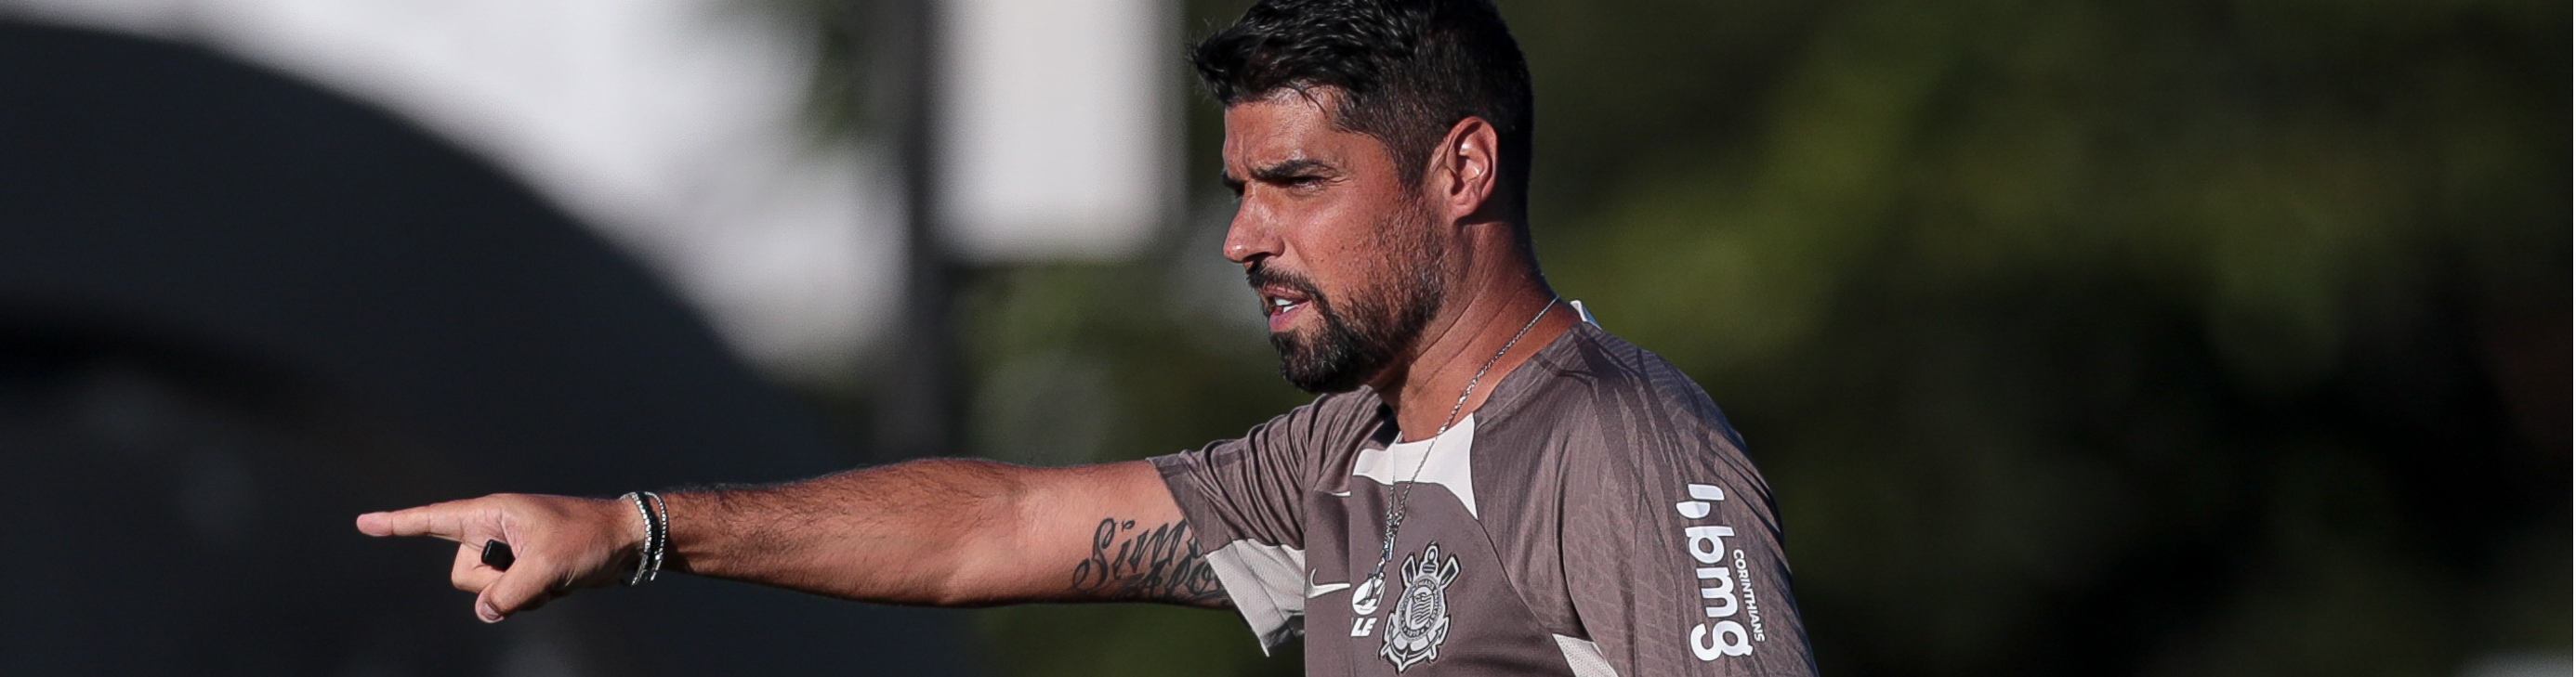 Futebol Masculino: Timão encerra preparação para a próxima rodada do Brasileiro